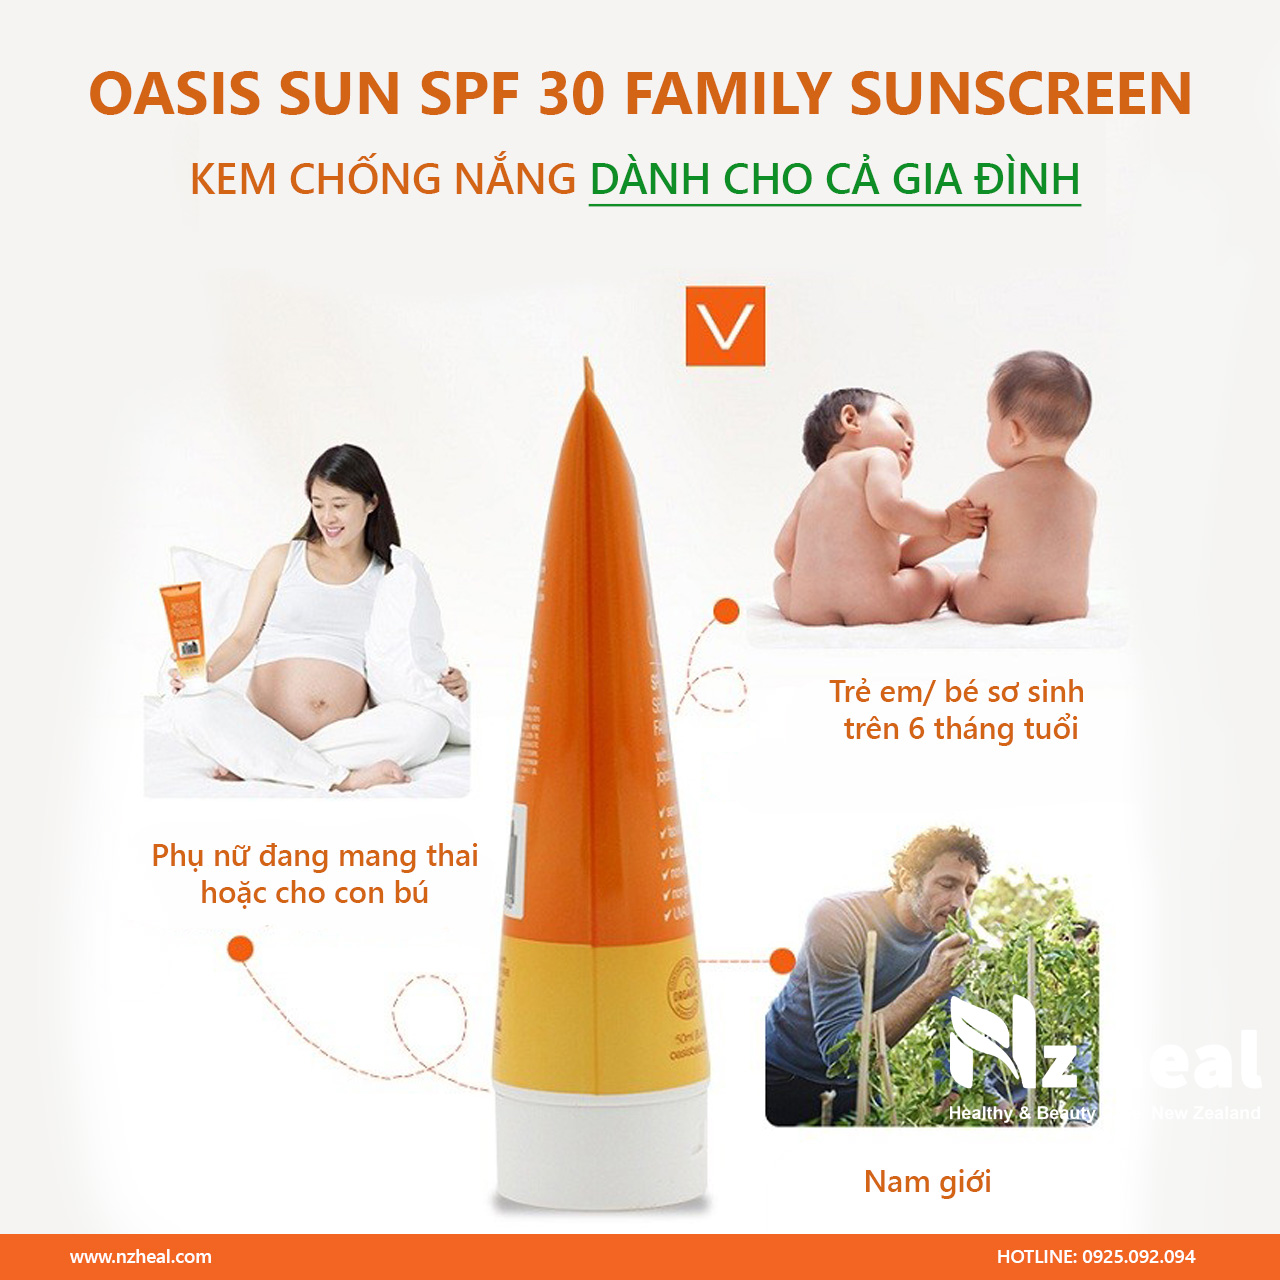 Kem chống nắng Oasis Sun SPF 30 Family Sunscreen 50ml dành cho cả gia đình